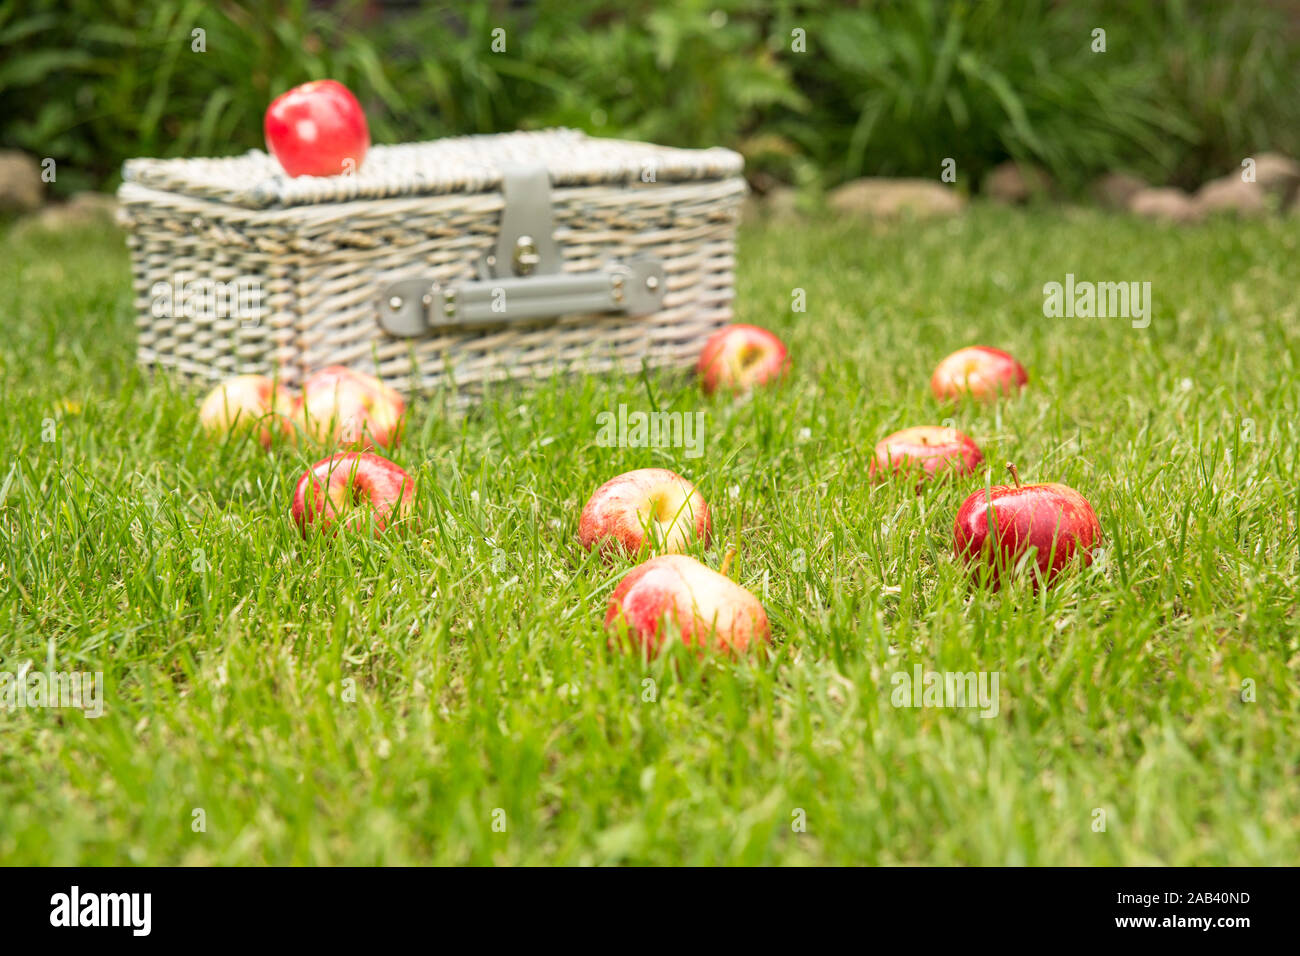 Frische Äpfel zusammen mit einem Picknickkorb haus auf Rasen |Les pommes fraîches avec un panier de pique-nique sur l'herbe verte| Banque D'Images